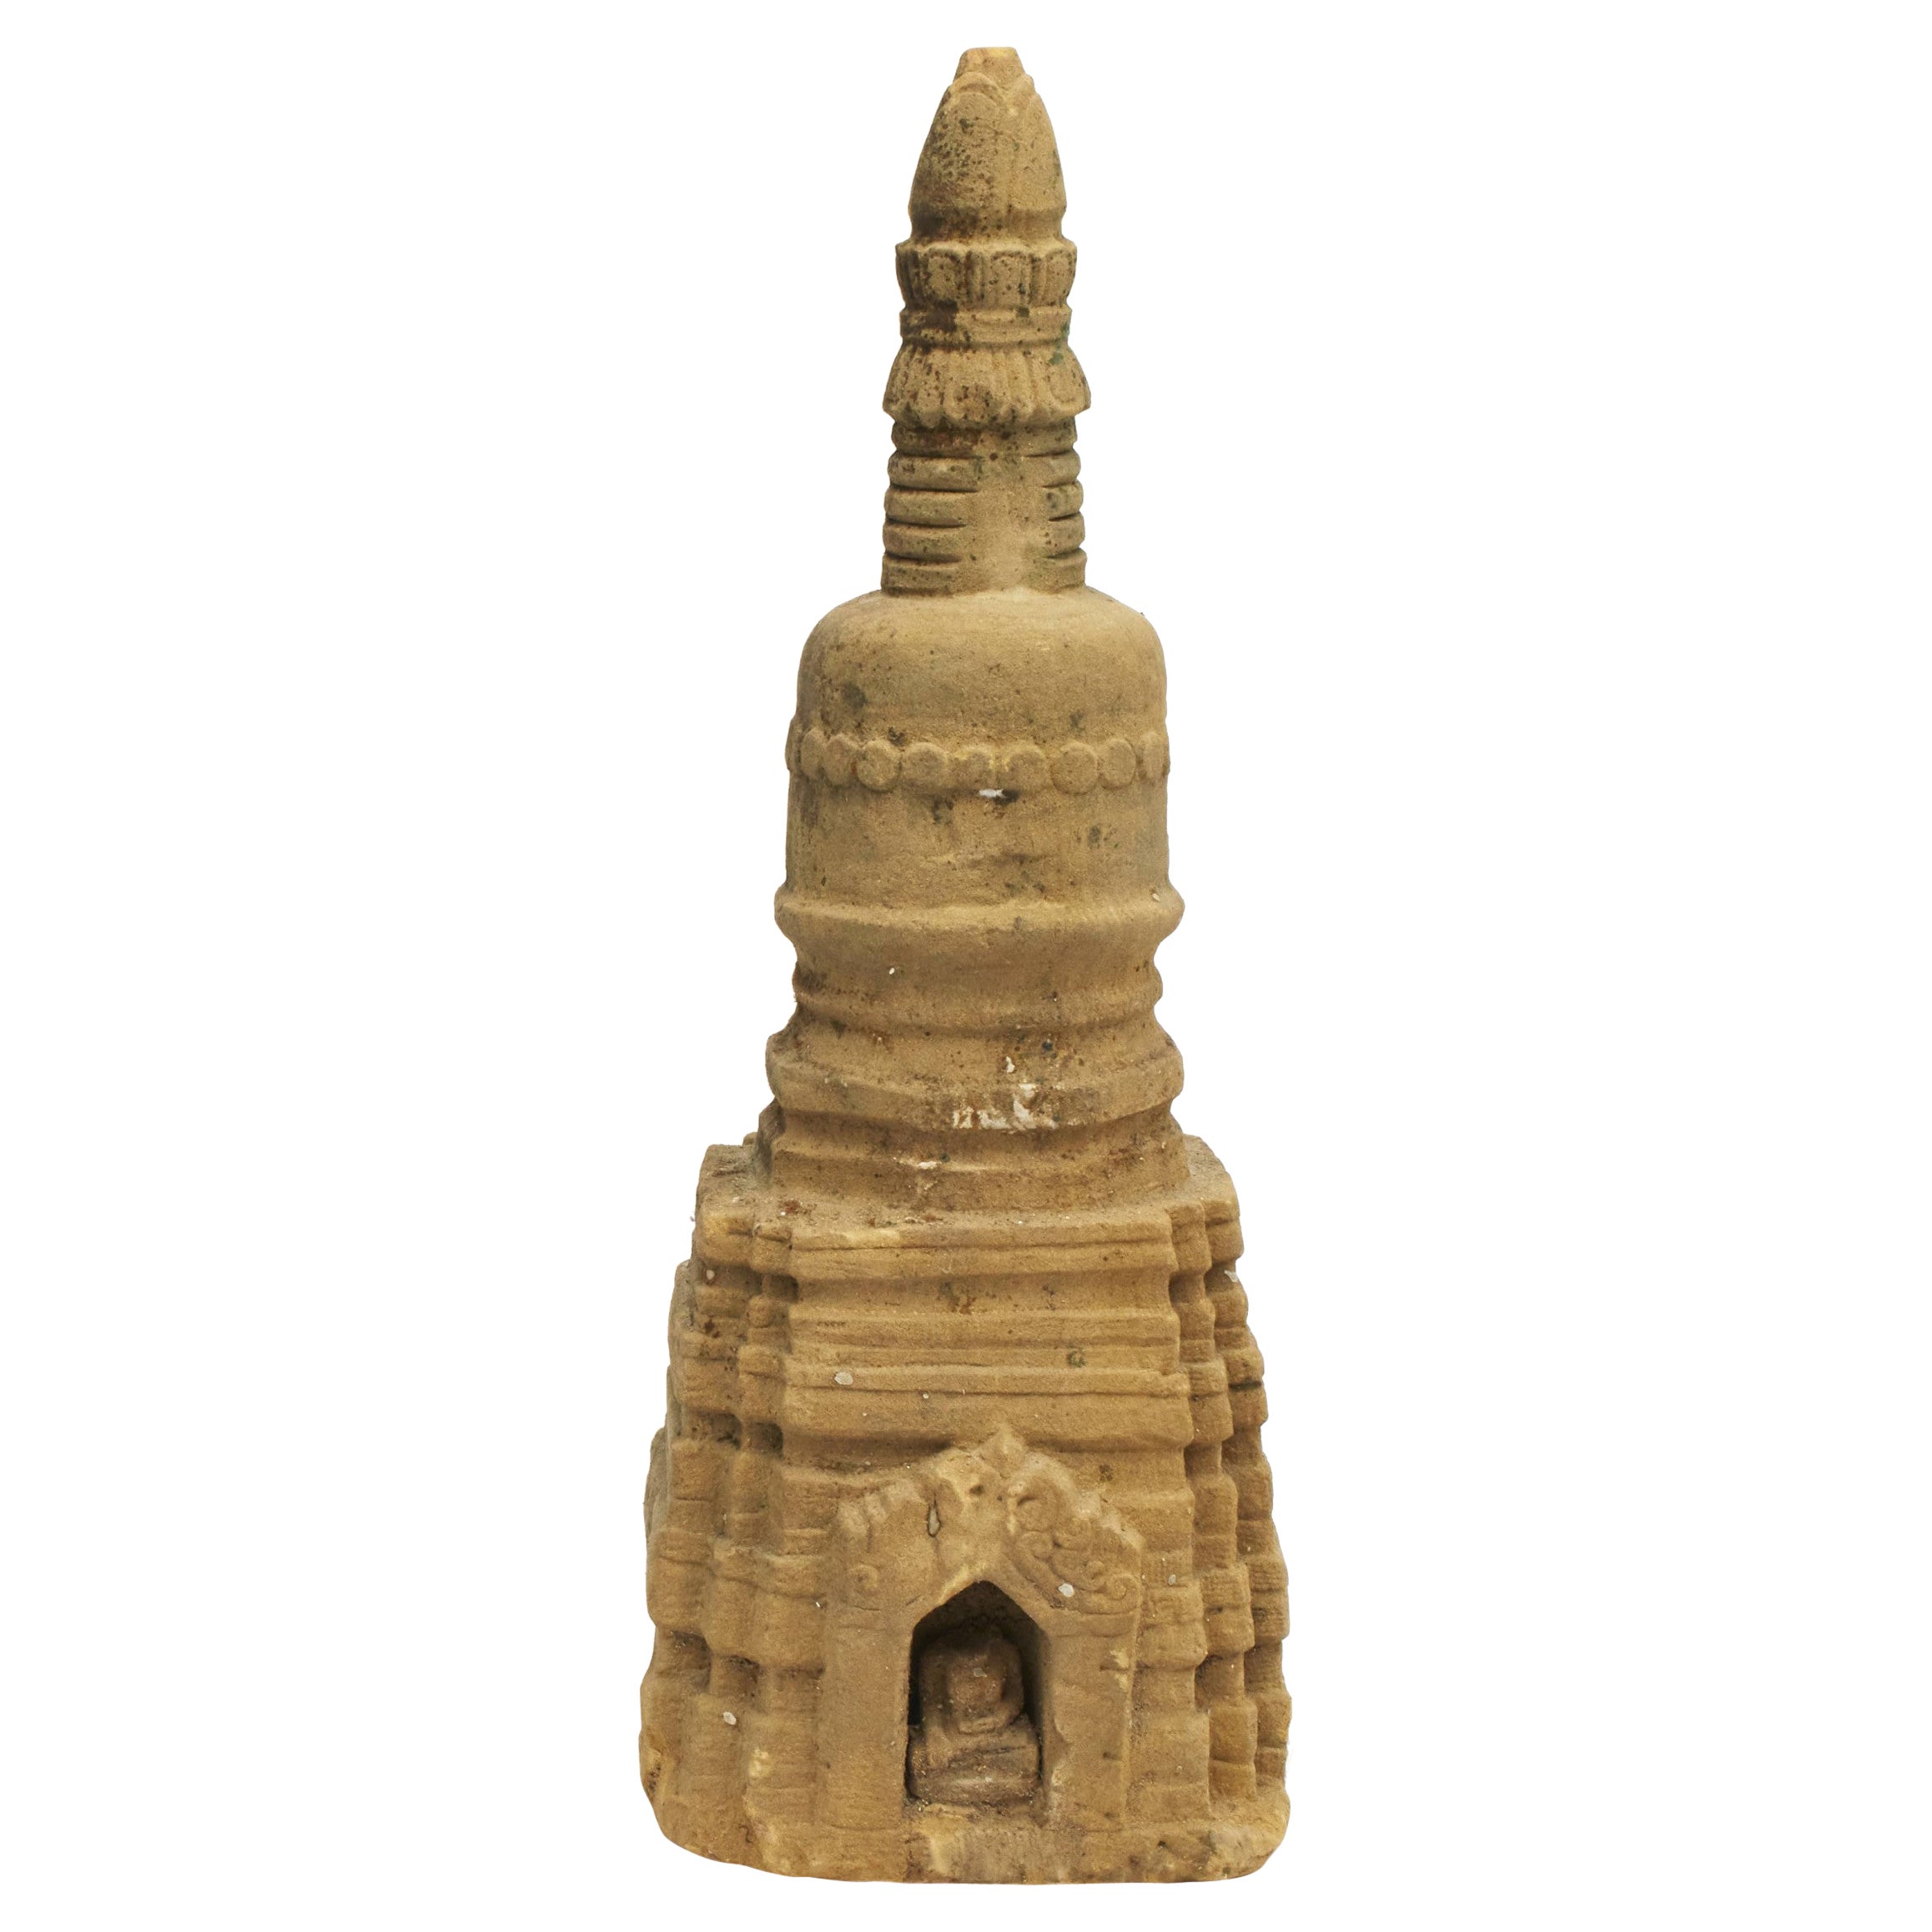 Seltene 400-600 Jahre alte birmanische Stupa-Pagoda-Skulptur aus Sandstein